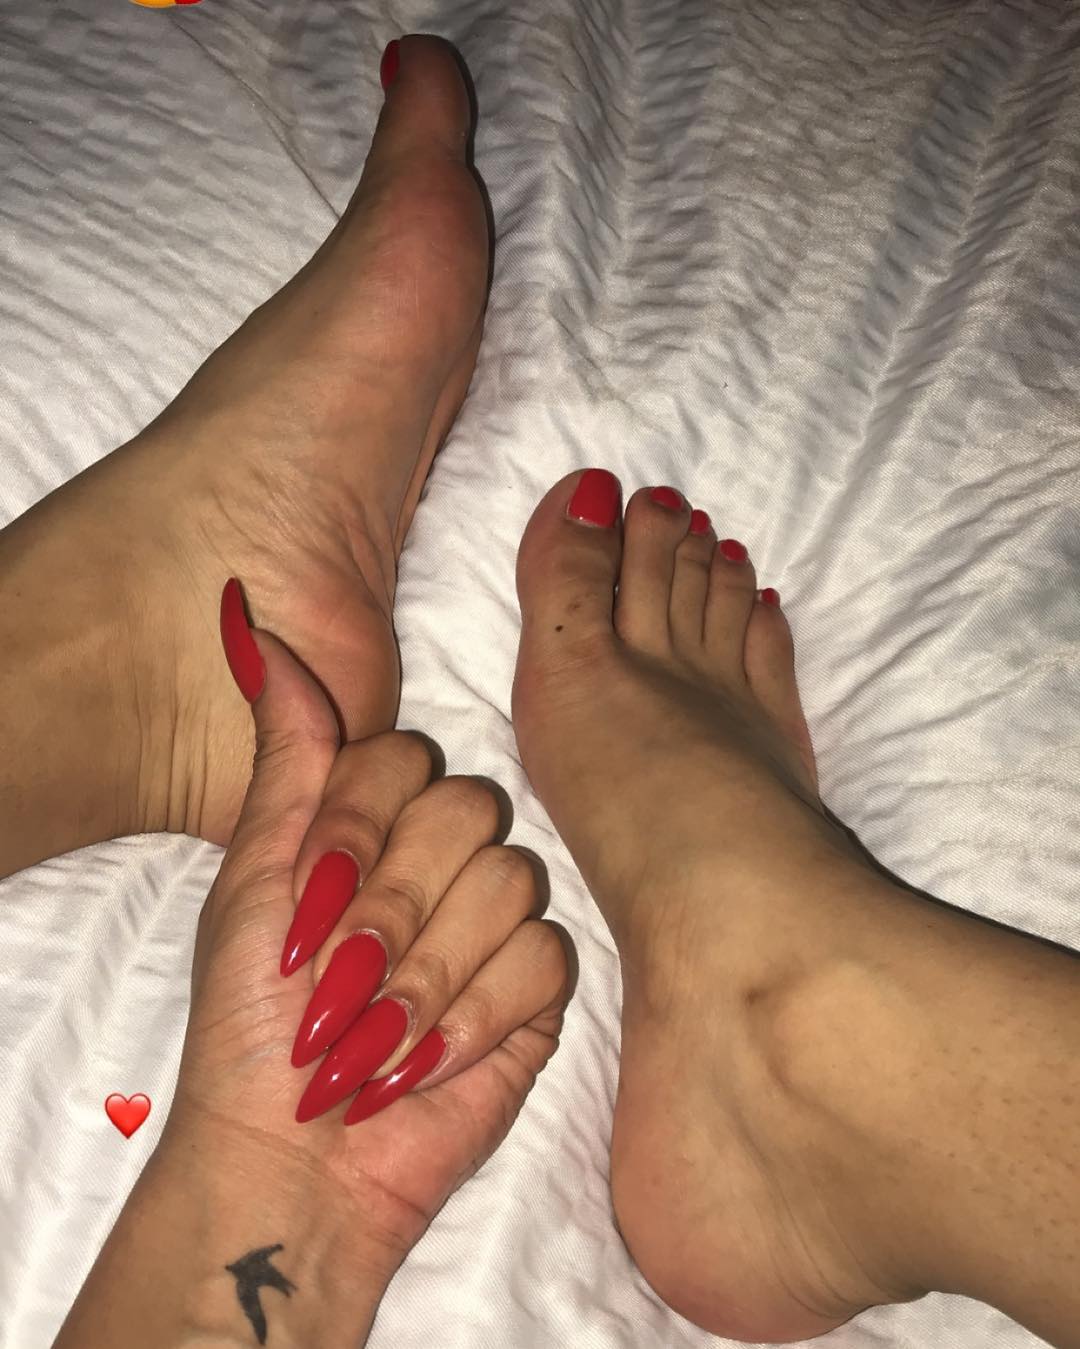 👣👣👣#feet #feetporn #transfeet #nails #nails💅 #nailsandtoes